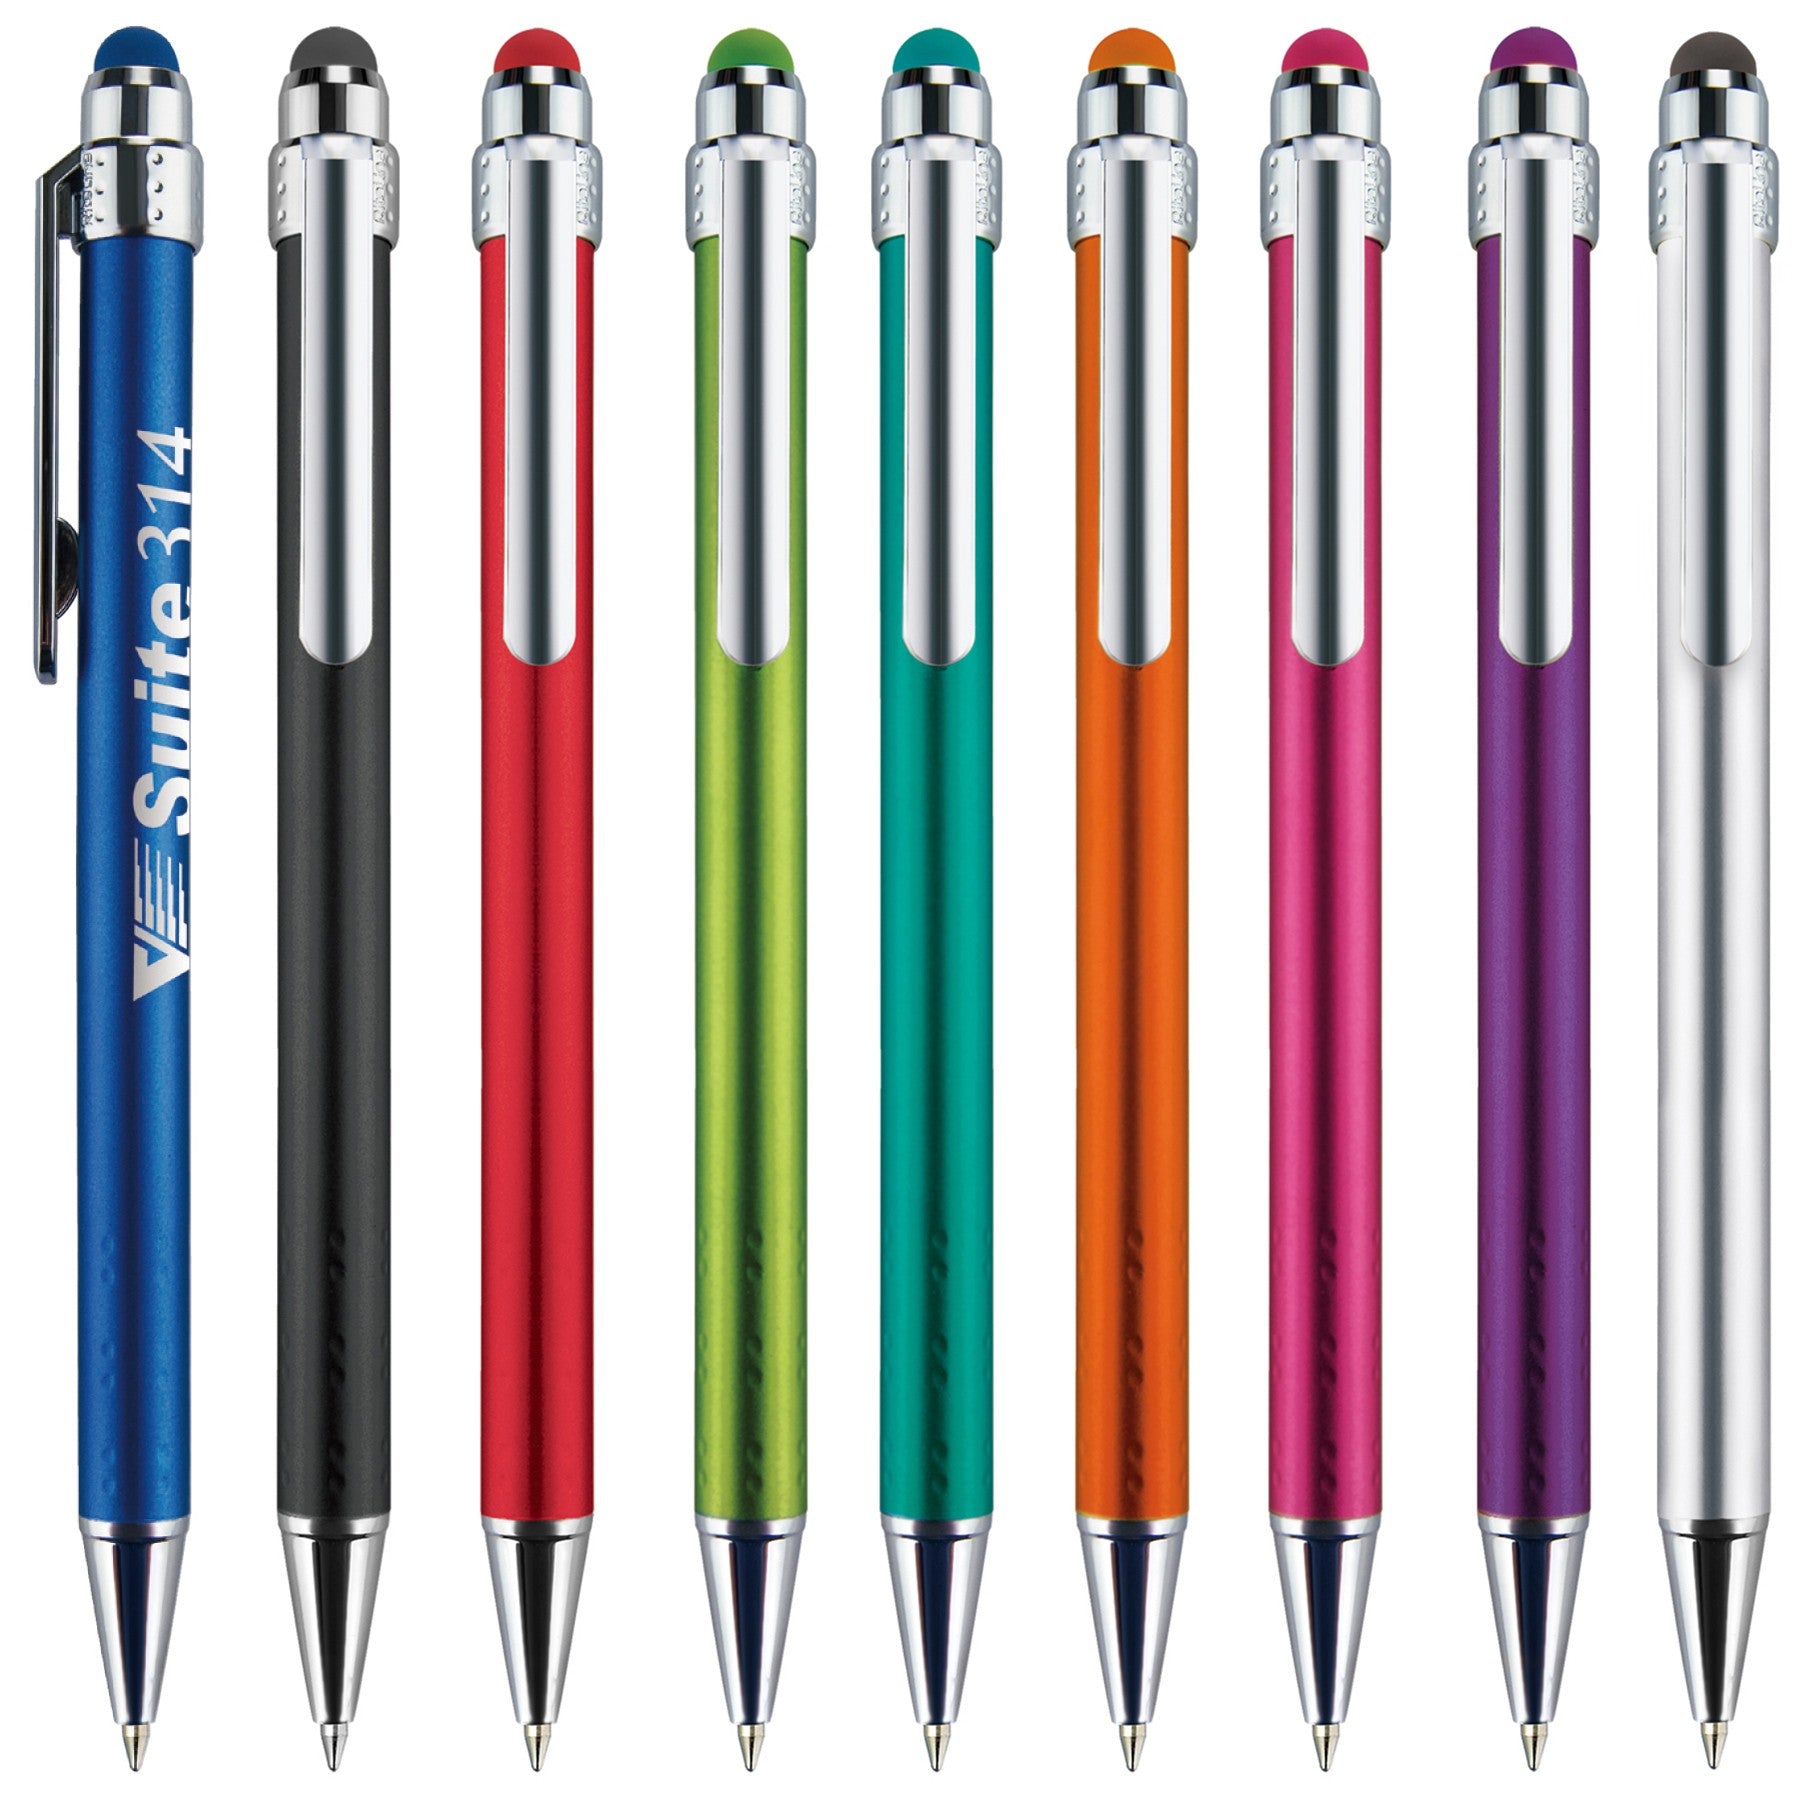 Lavon Stylus Chrome Pen – Apartment Ideas Promotional